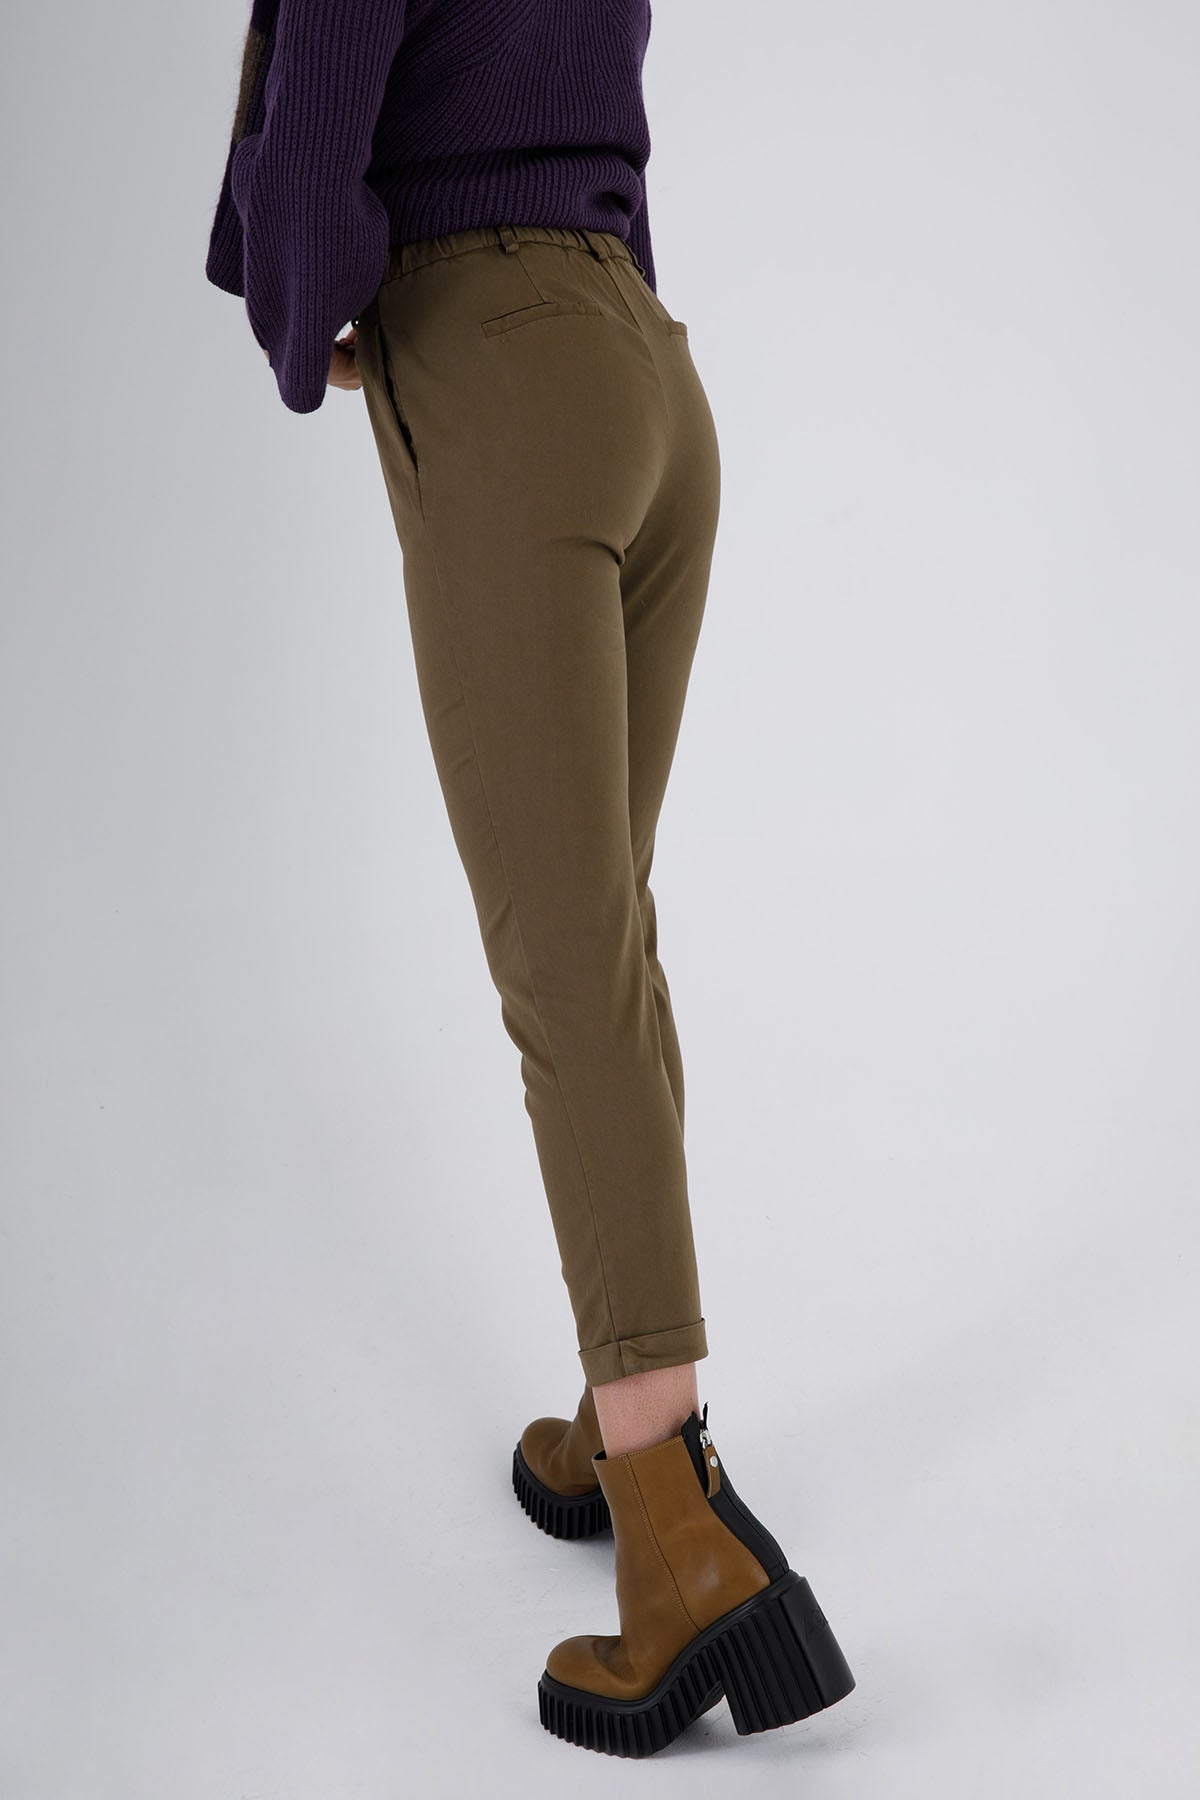 Transit Yandan Cepli Pantolon-Libas Trendy Fashion Store